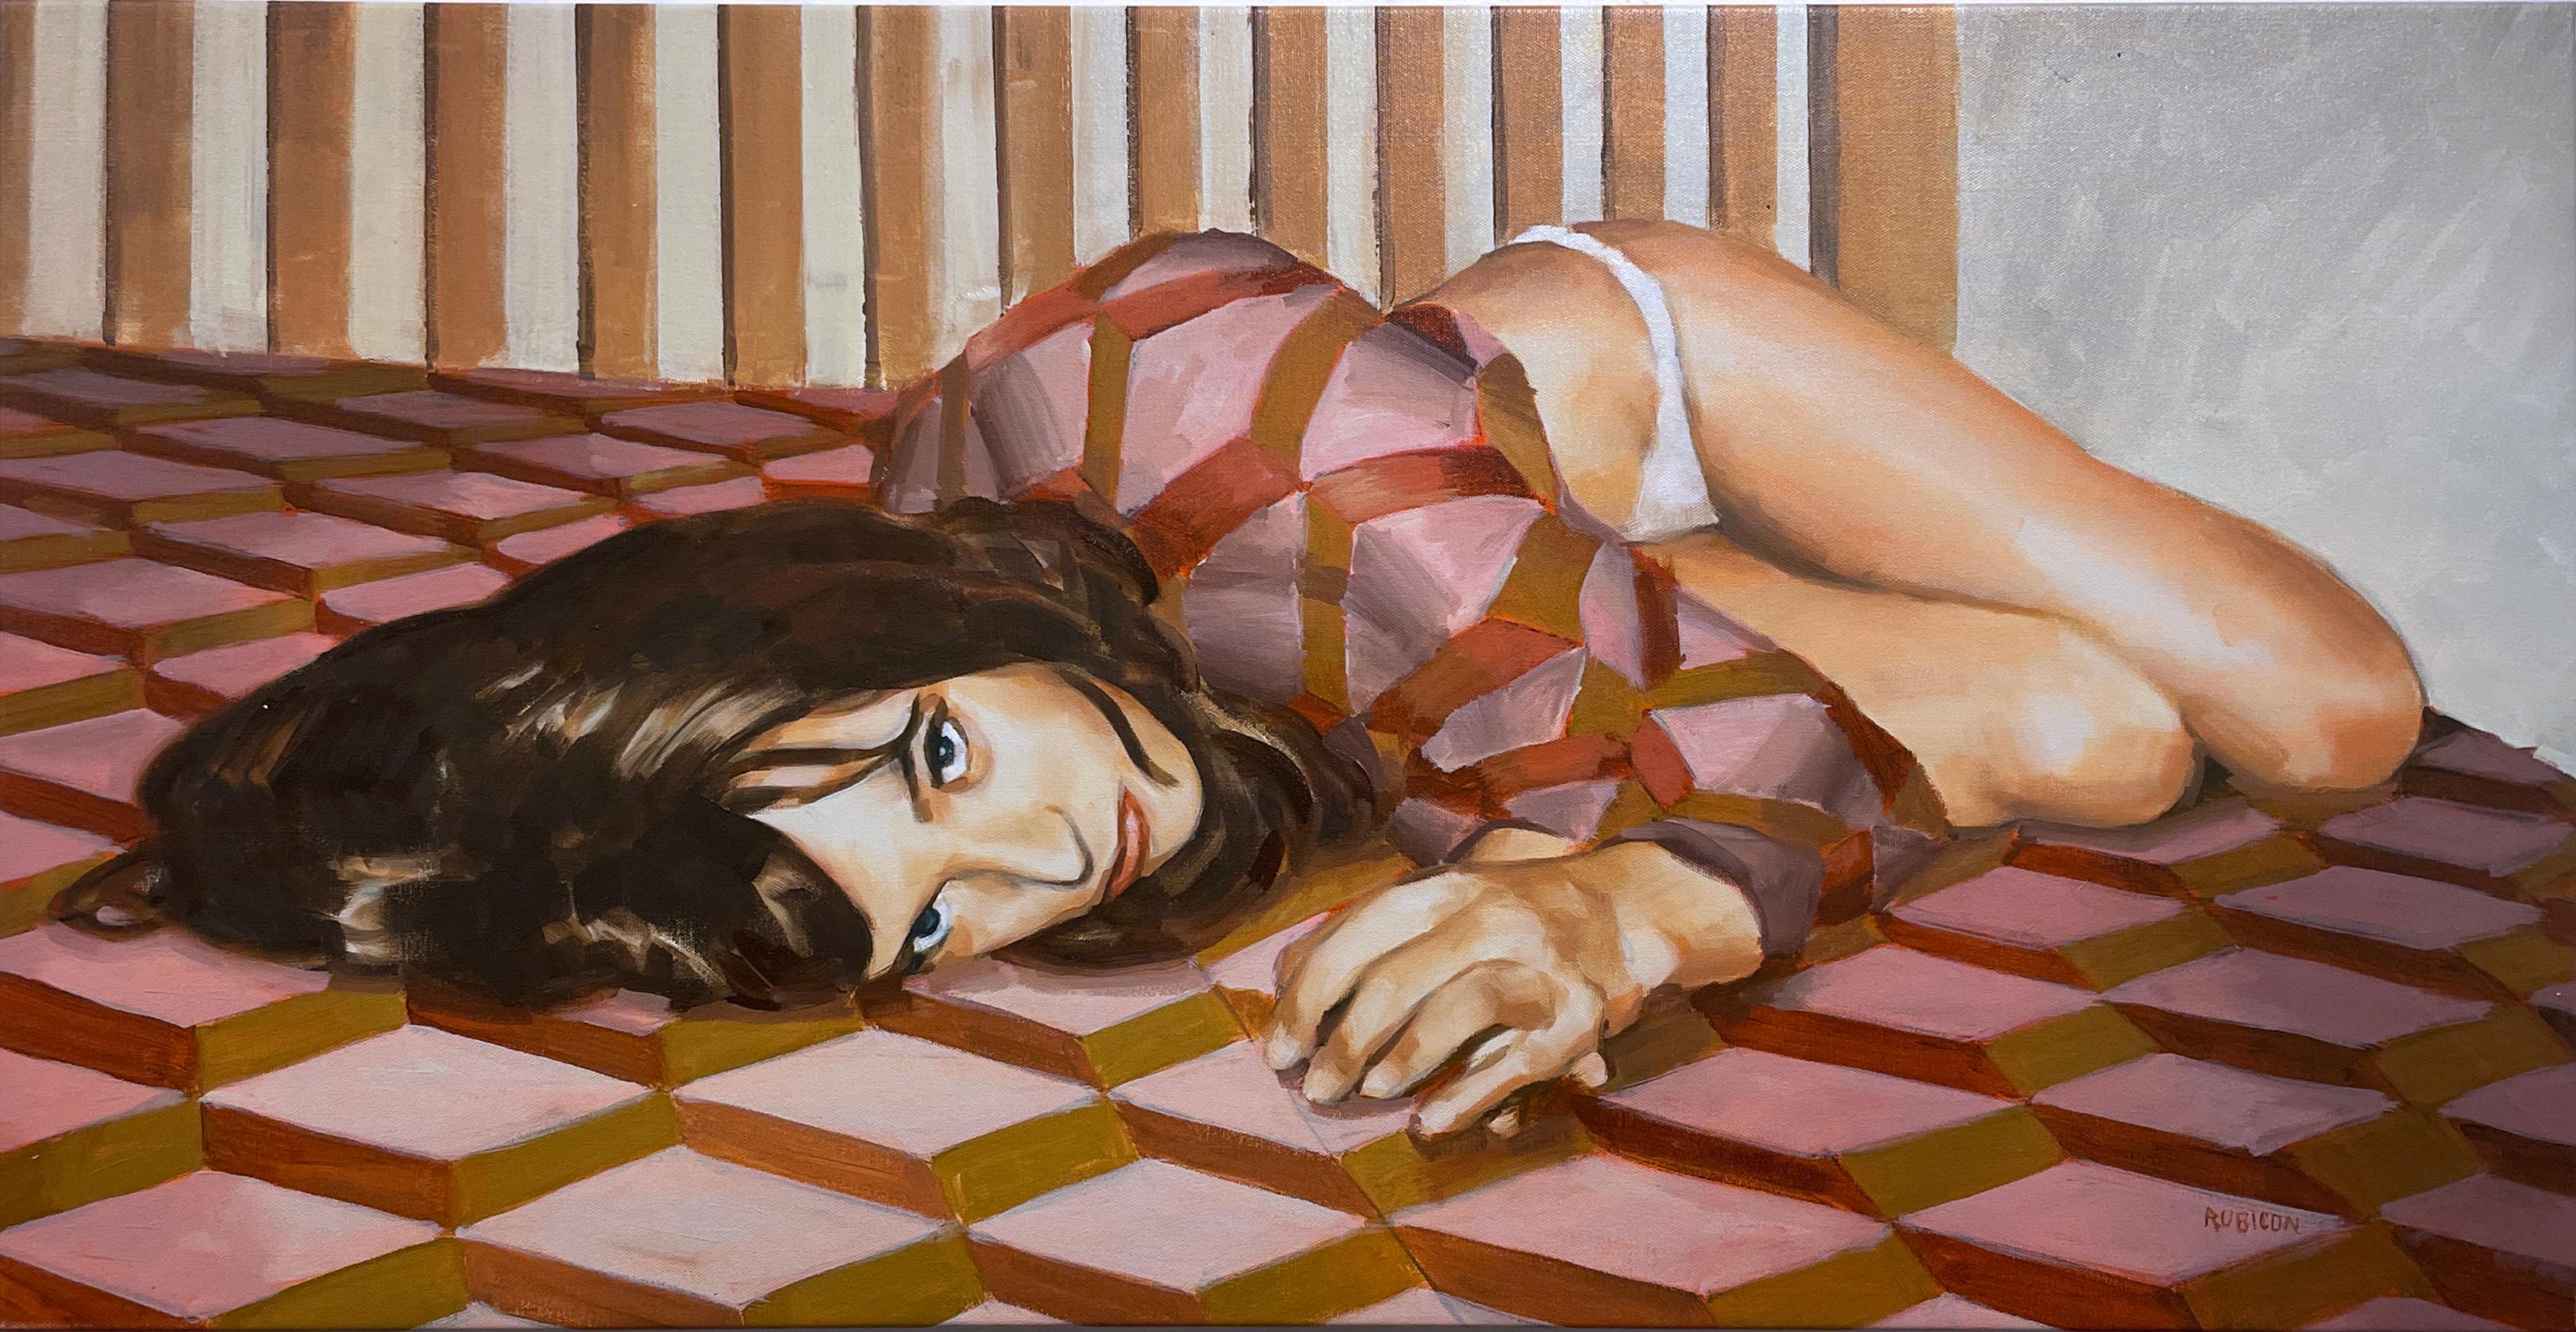 Figurative Painting RU8ICON1 - Sheets (2022) huile sur toile, figuratif, femme sur le lit, motif rose & brun doré.